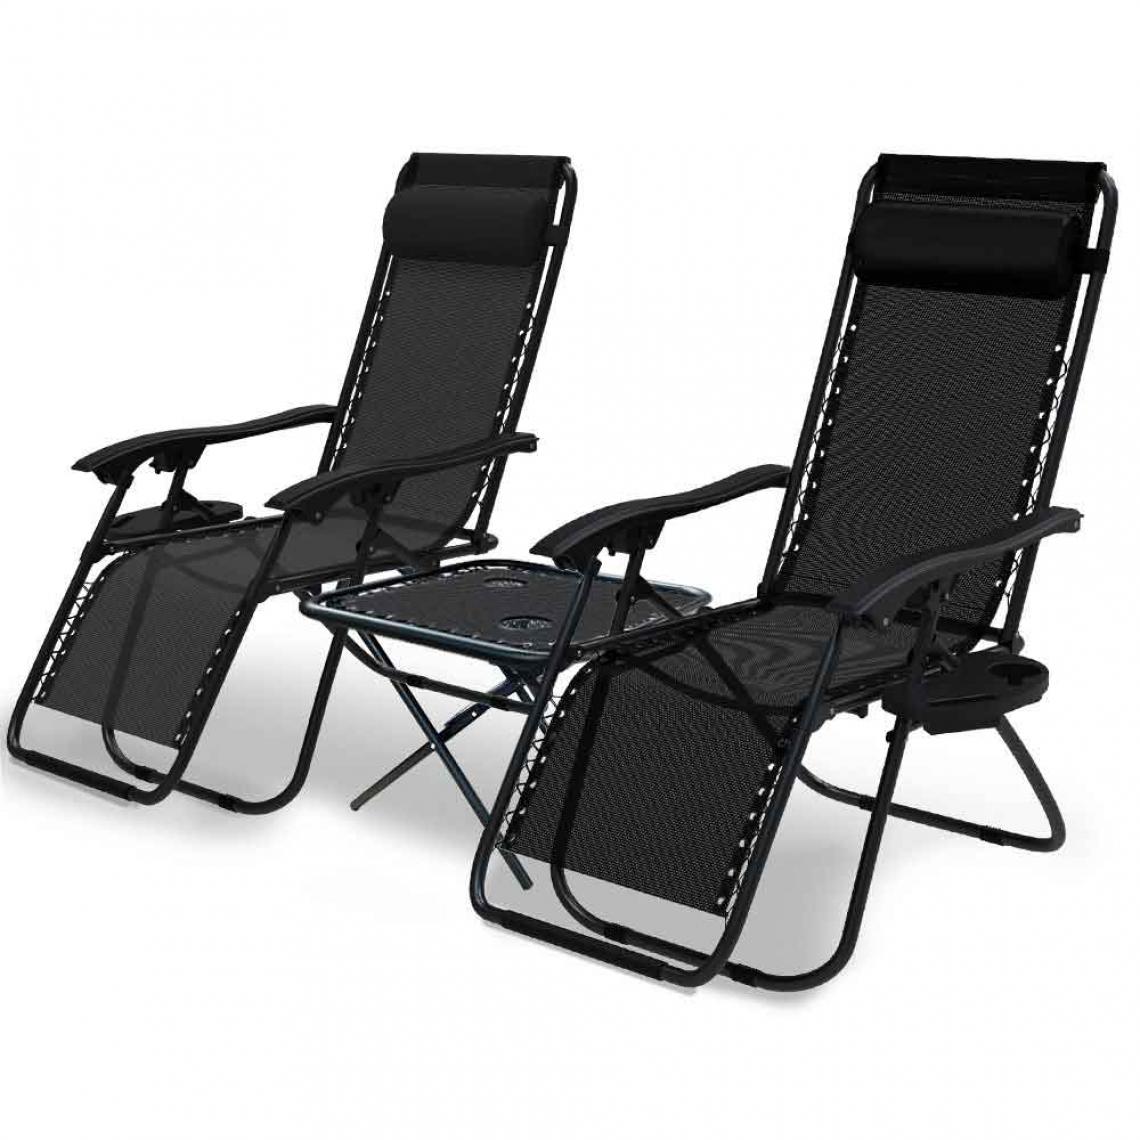 Vounot - Lot de 2 Chaise longue inclinable en textilene avec table d'appoint porte gobelet et portable noir - Transats, chaises longues